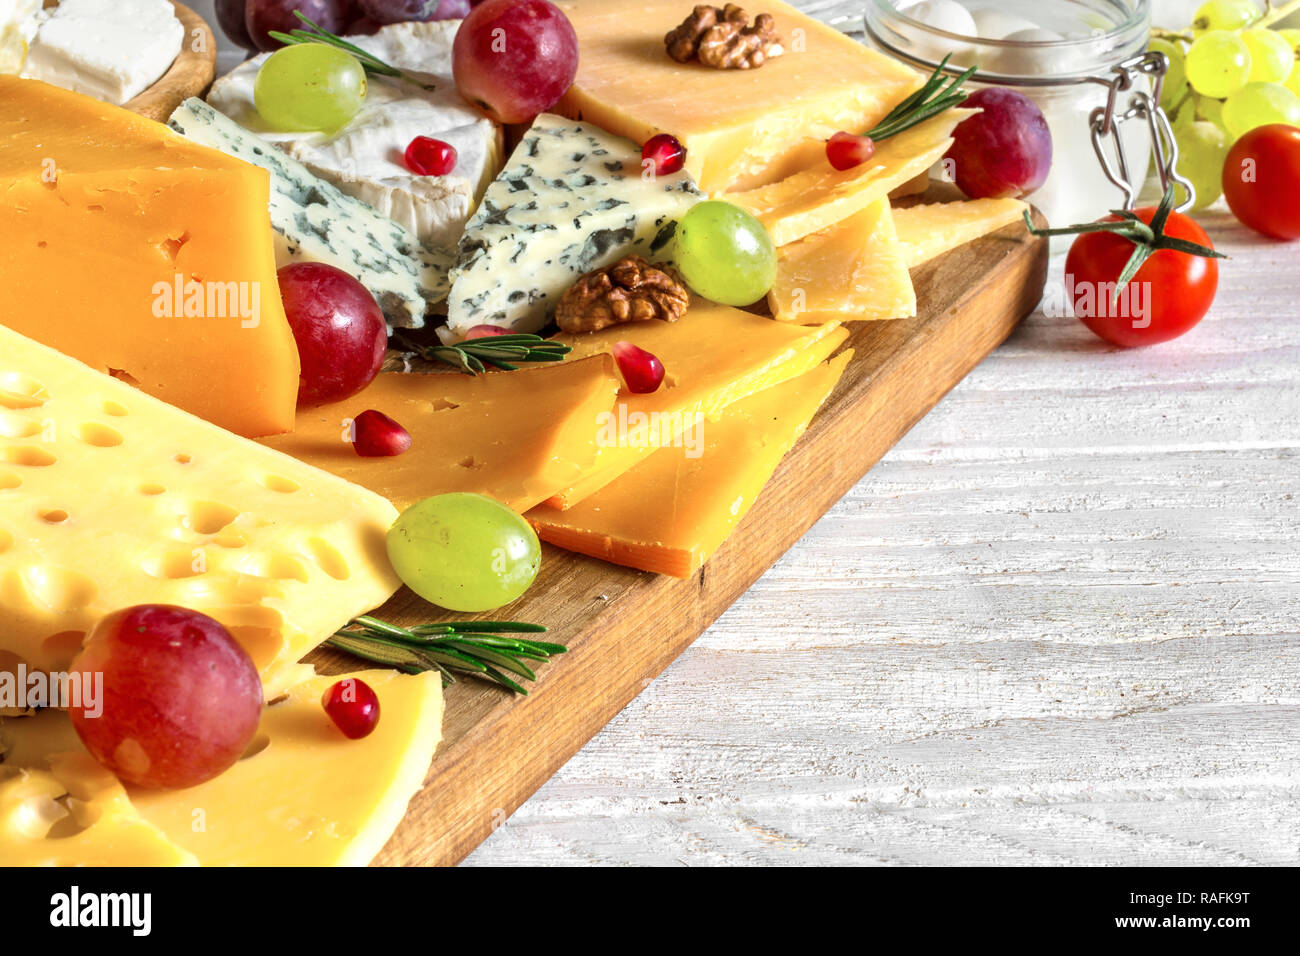 Vari tipi di formaggio con uve, rosmarino, pomodori e melograno sul tagliere di legno. close up Foto Stock